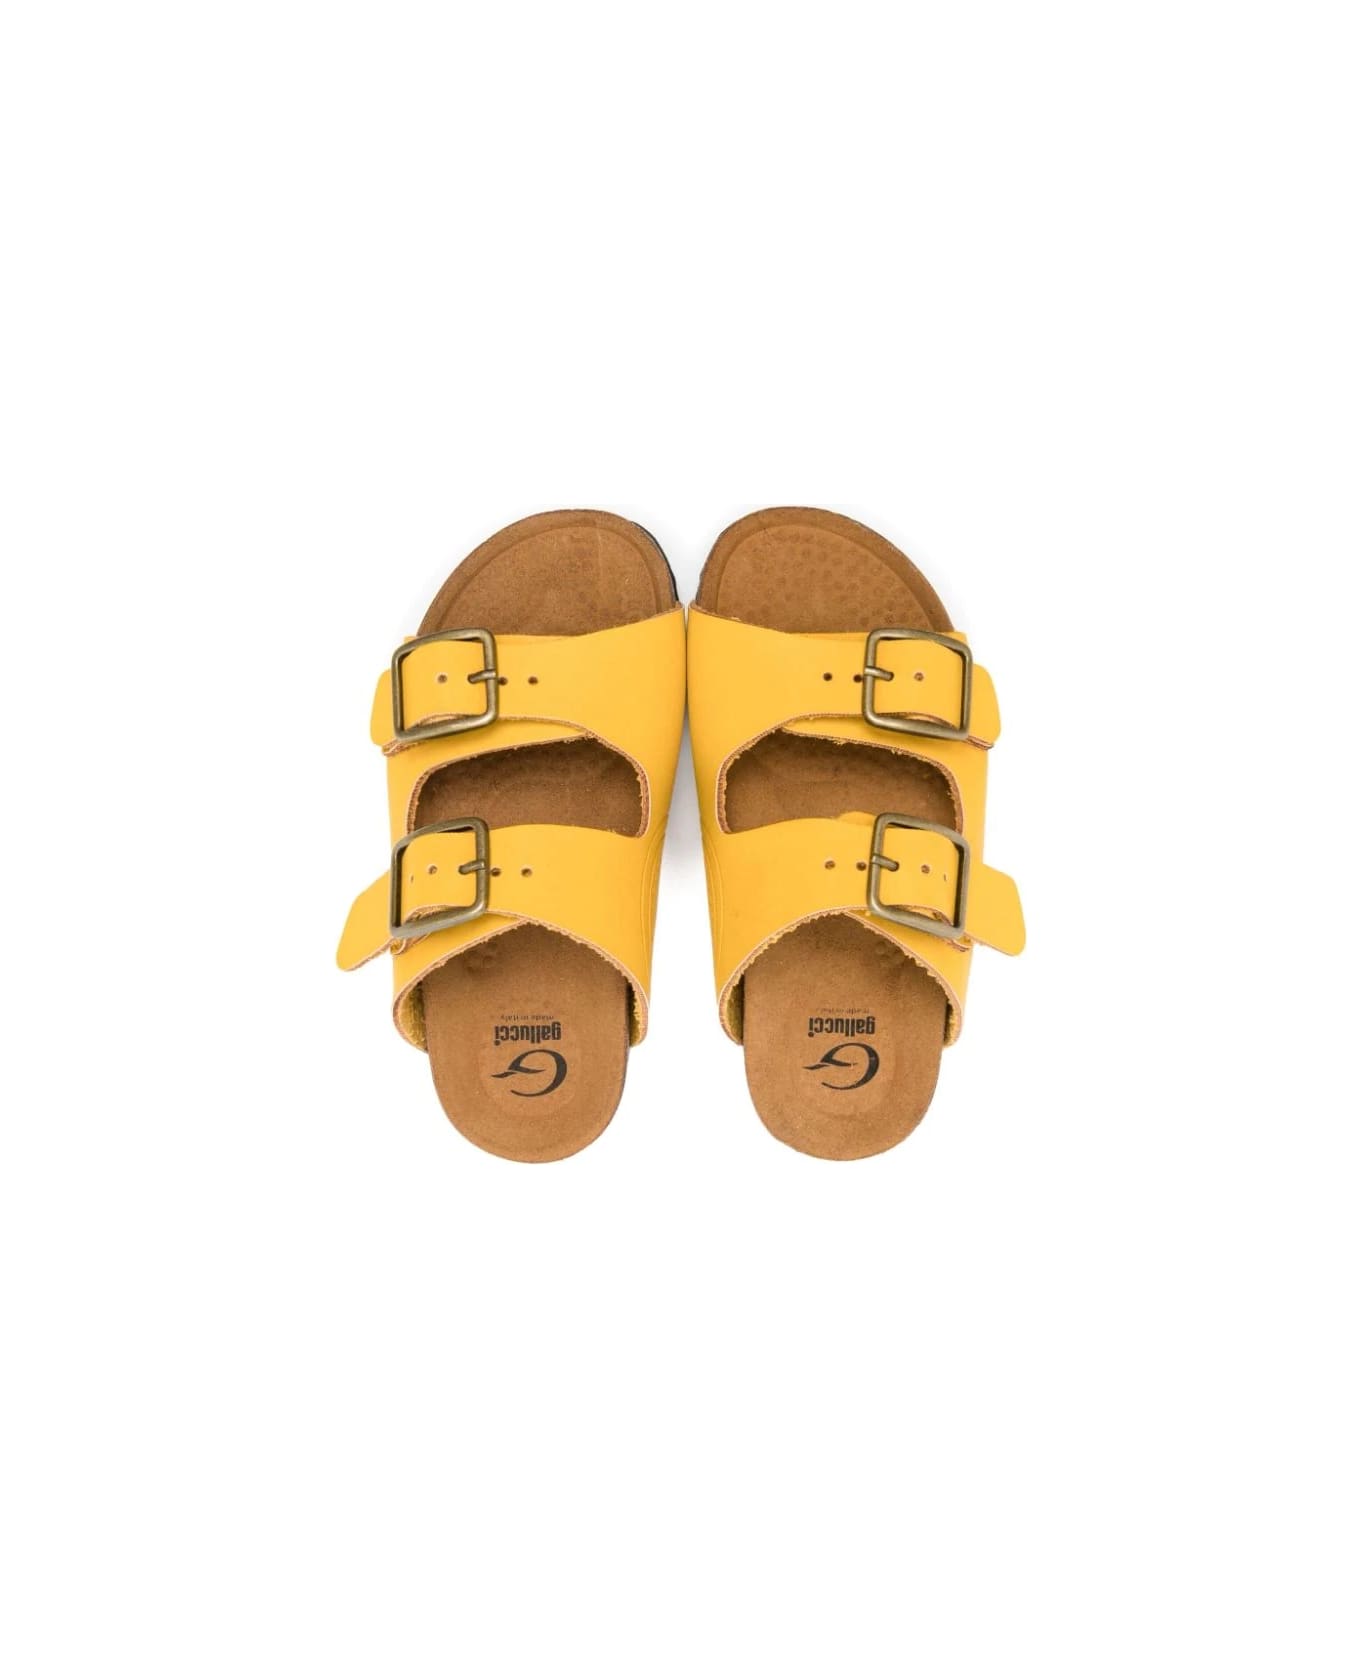 Gallucci Yellow Sandals - Yellow シューズ